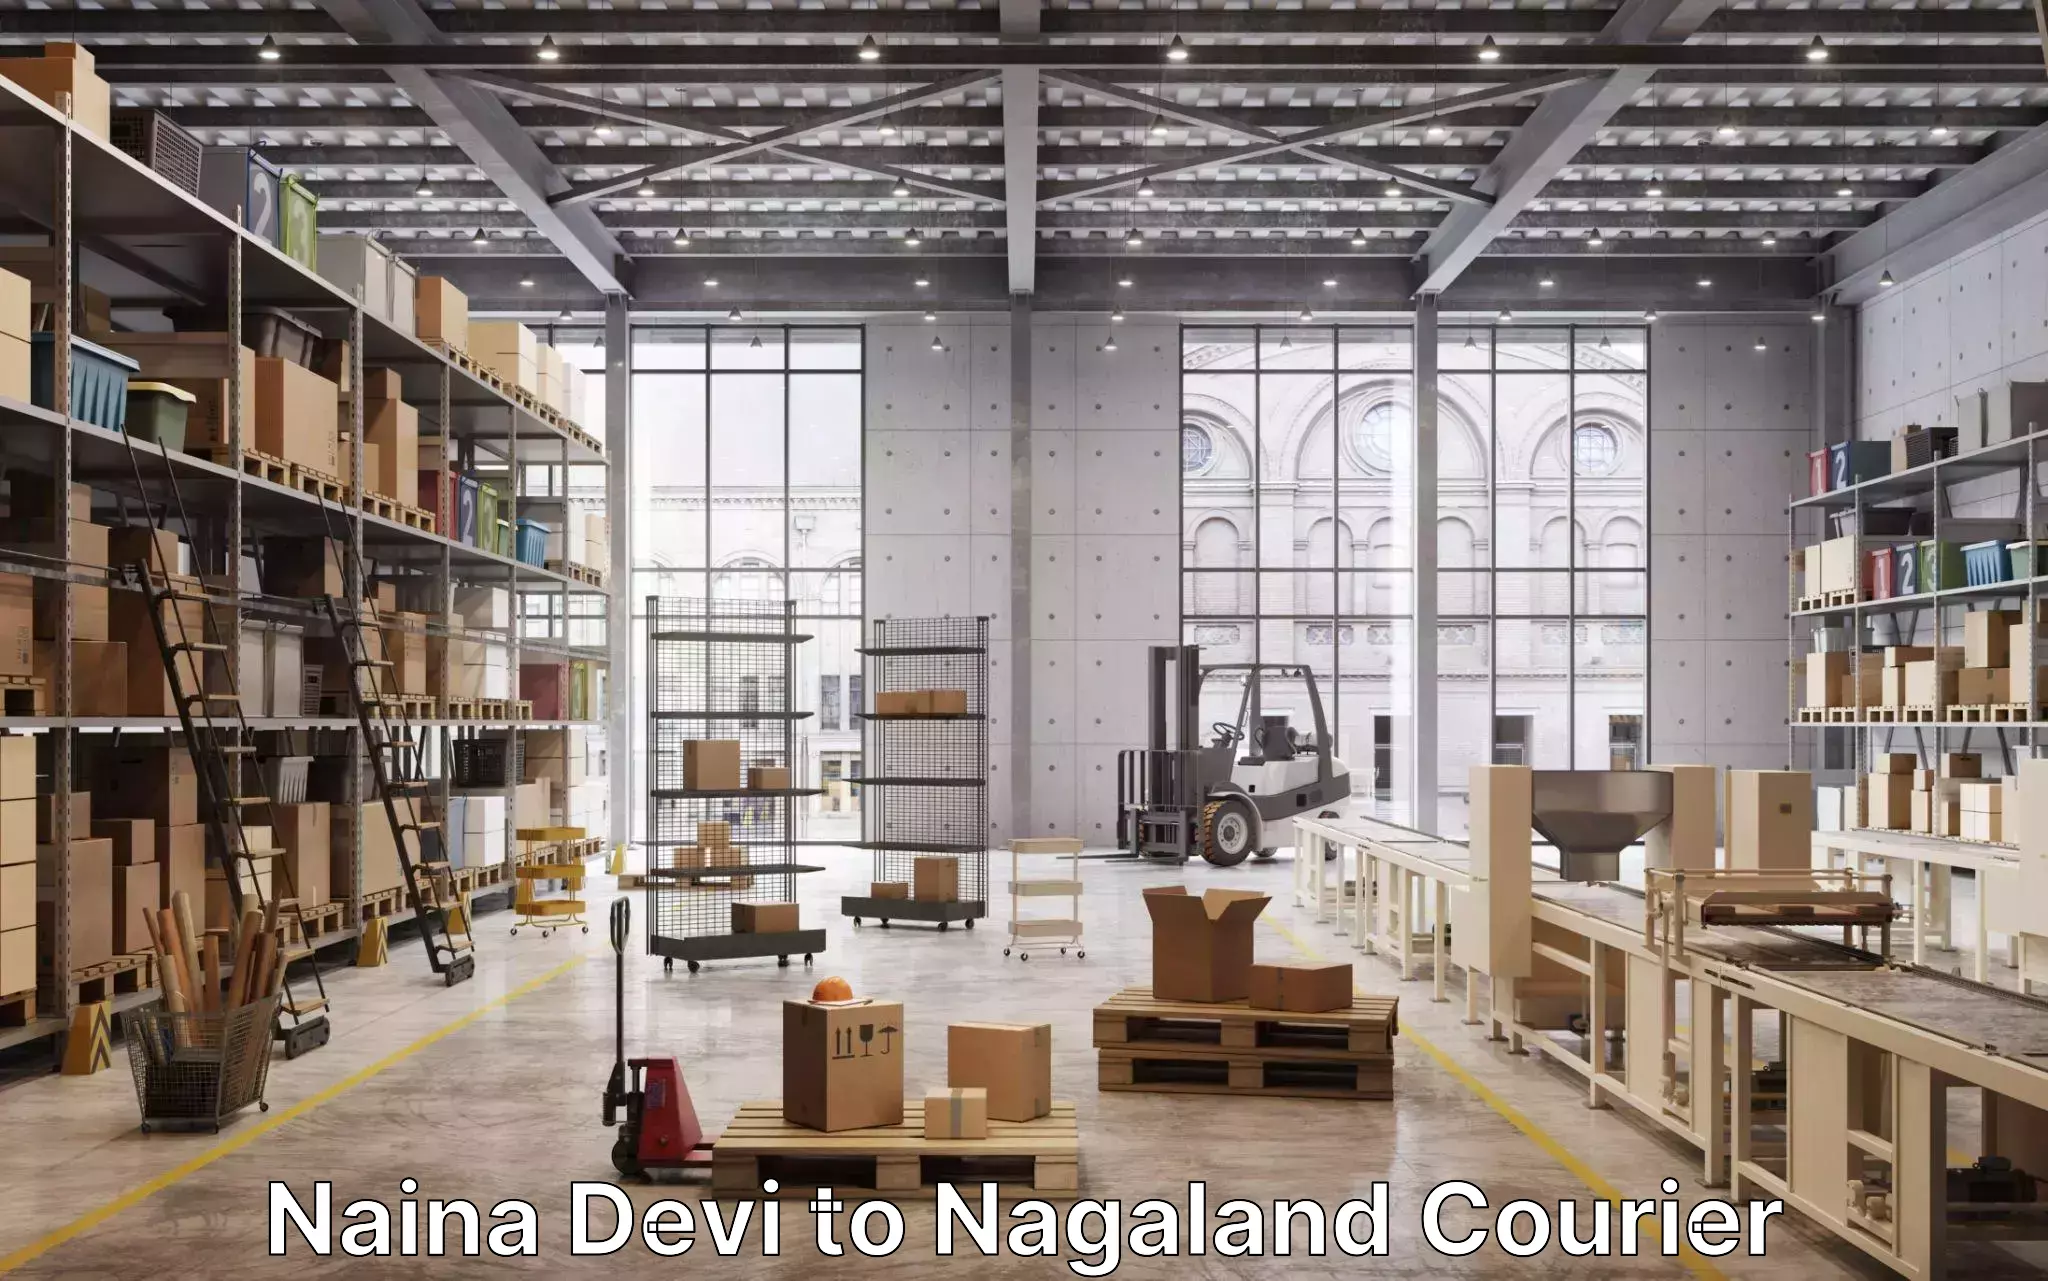 Furniture moving assistance Naina Devi to Nagaland